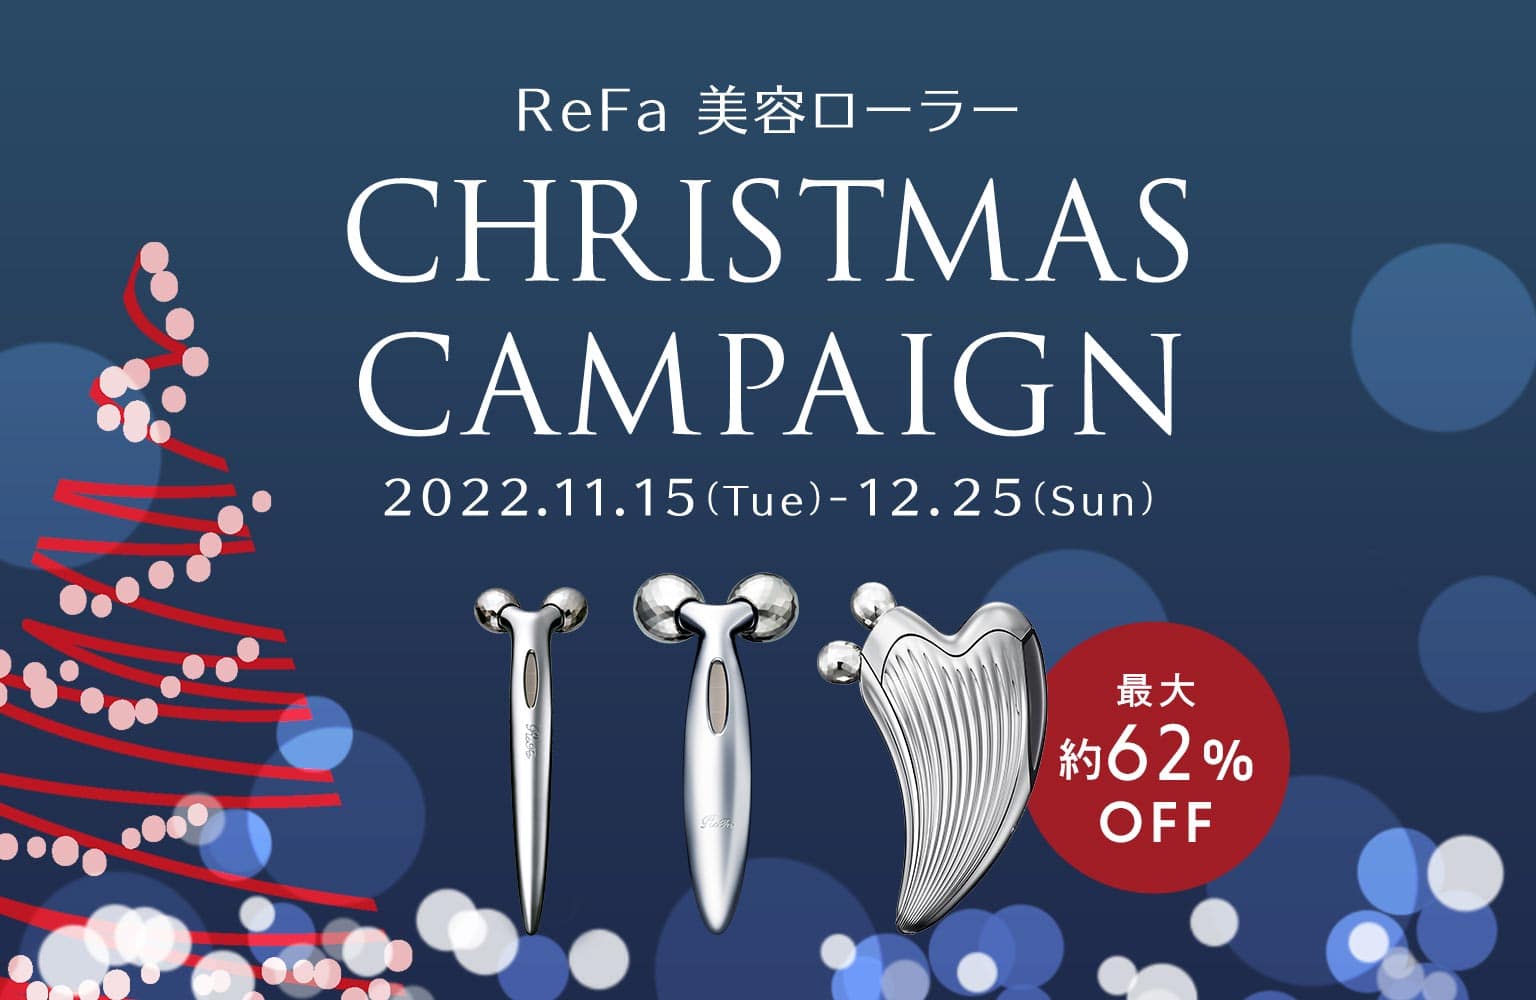 ReFa 美容ローラークリスマスキャンペーン